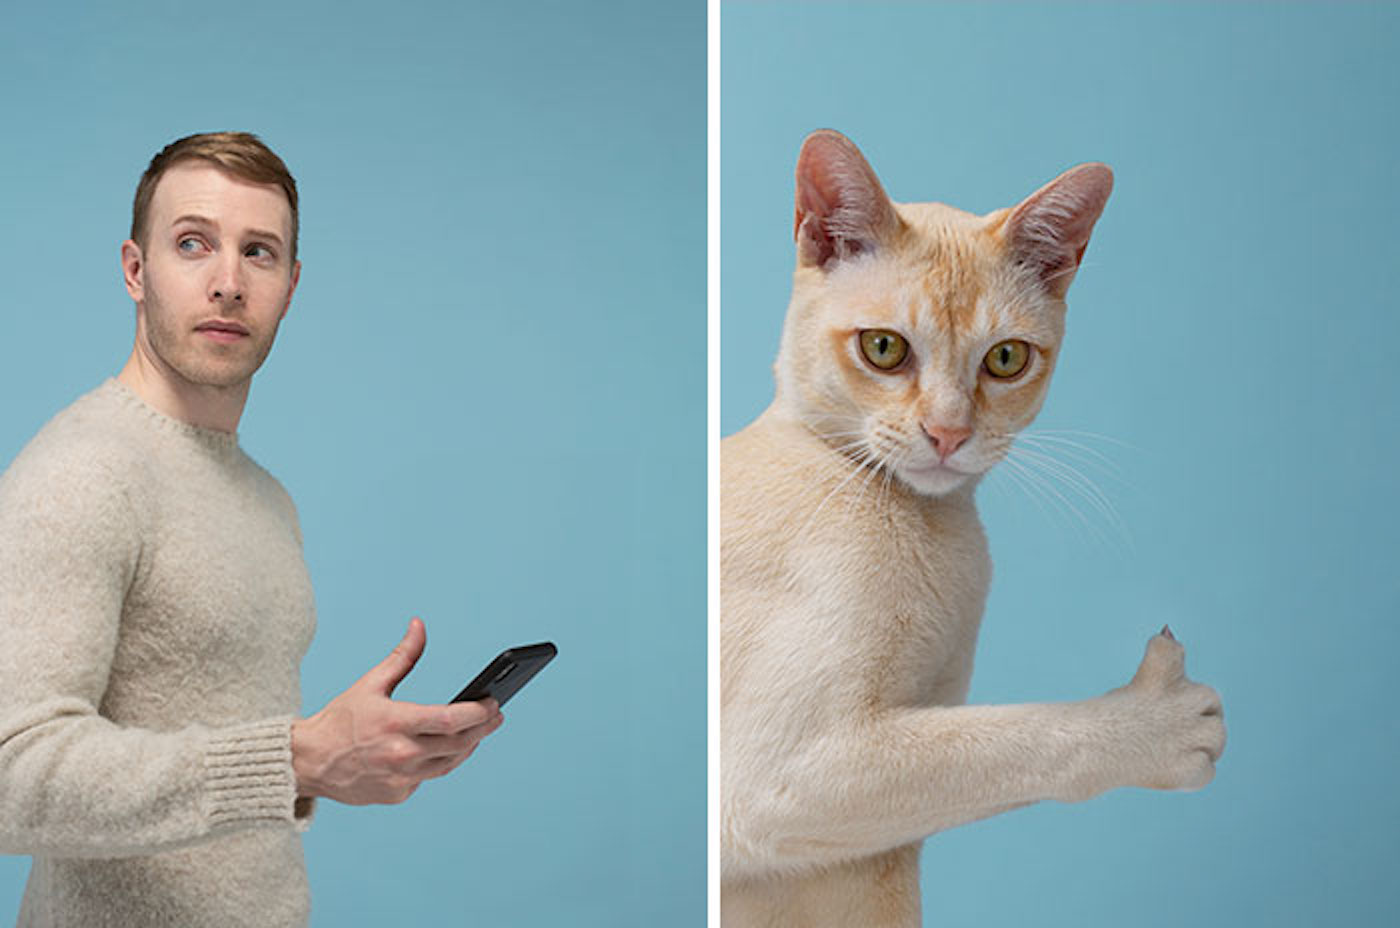 Le photographe Gerrard Gethings fait ressortir les ressemblances entre les chats et leurs maîtres